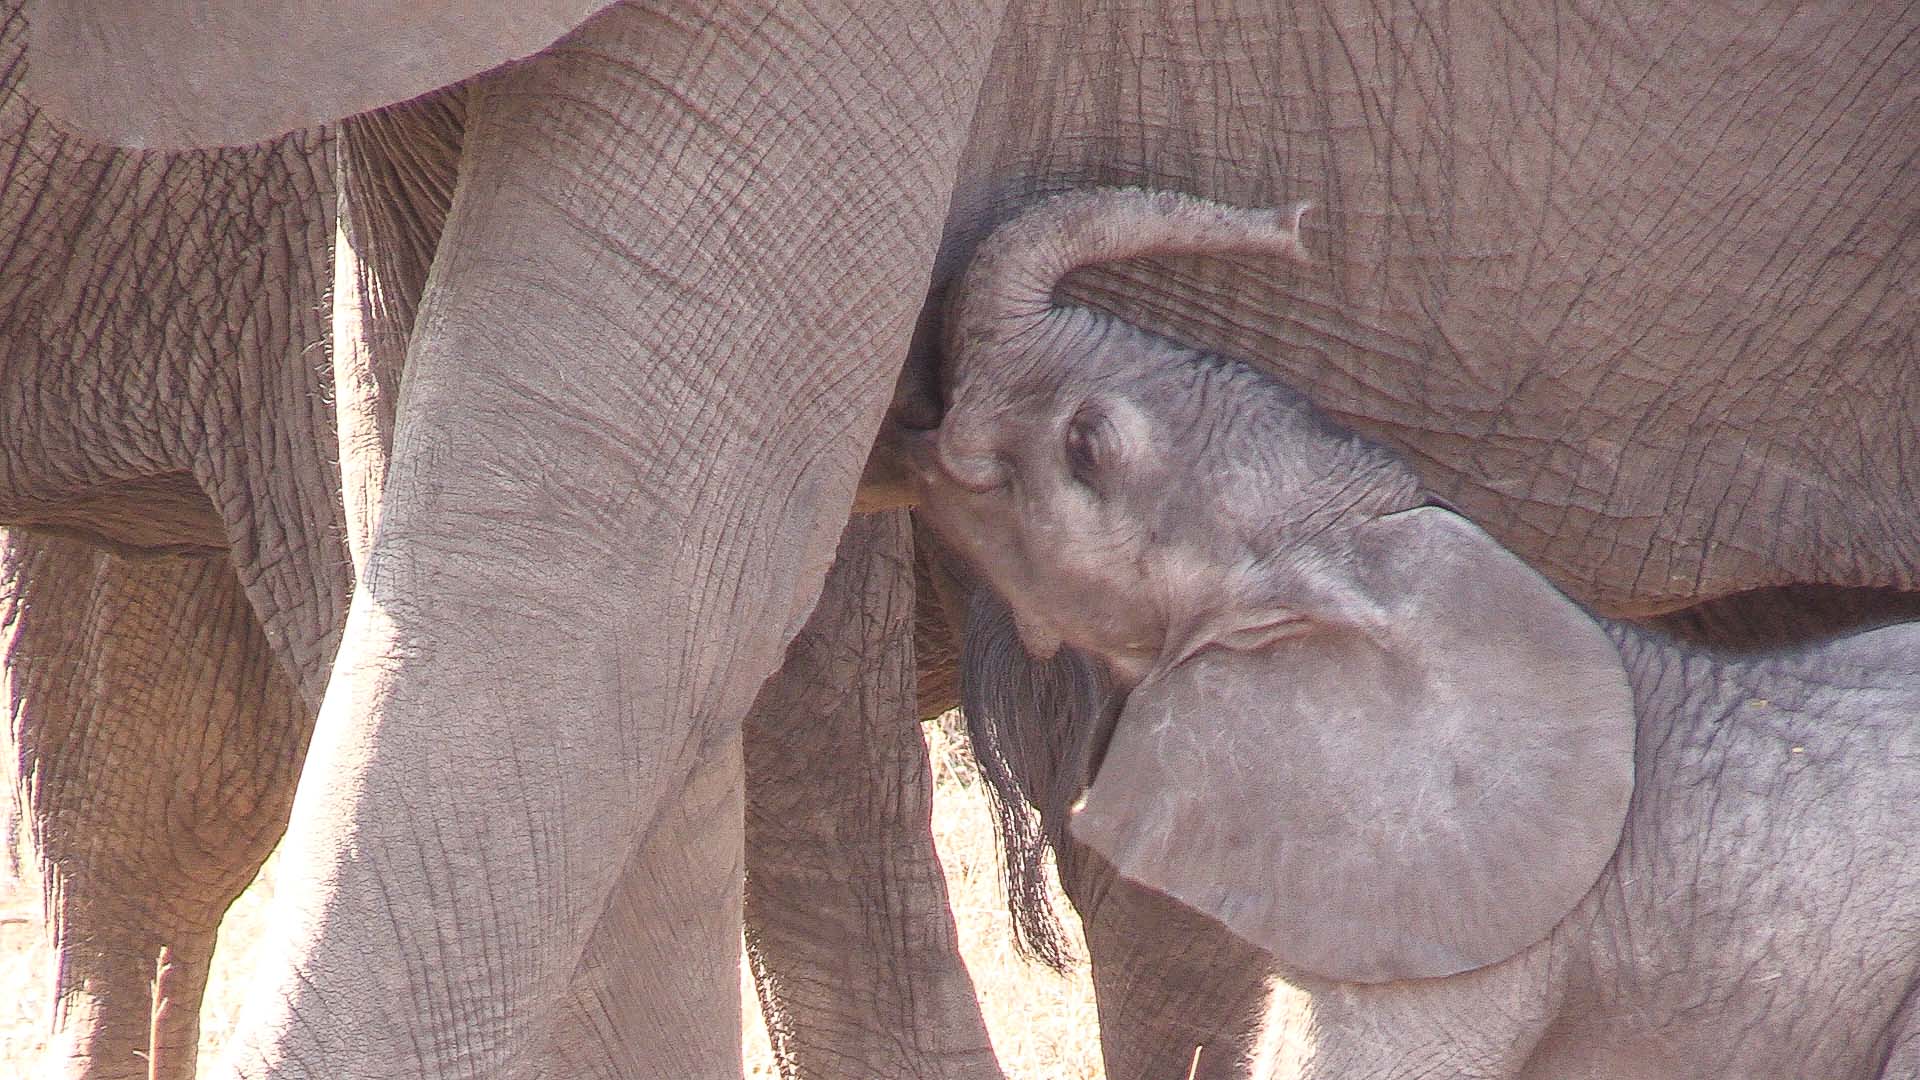 Do elephants eat their babies?